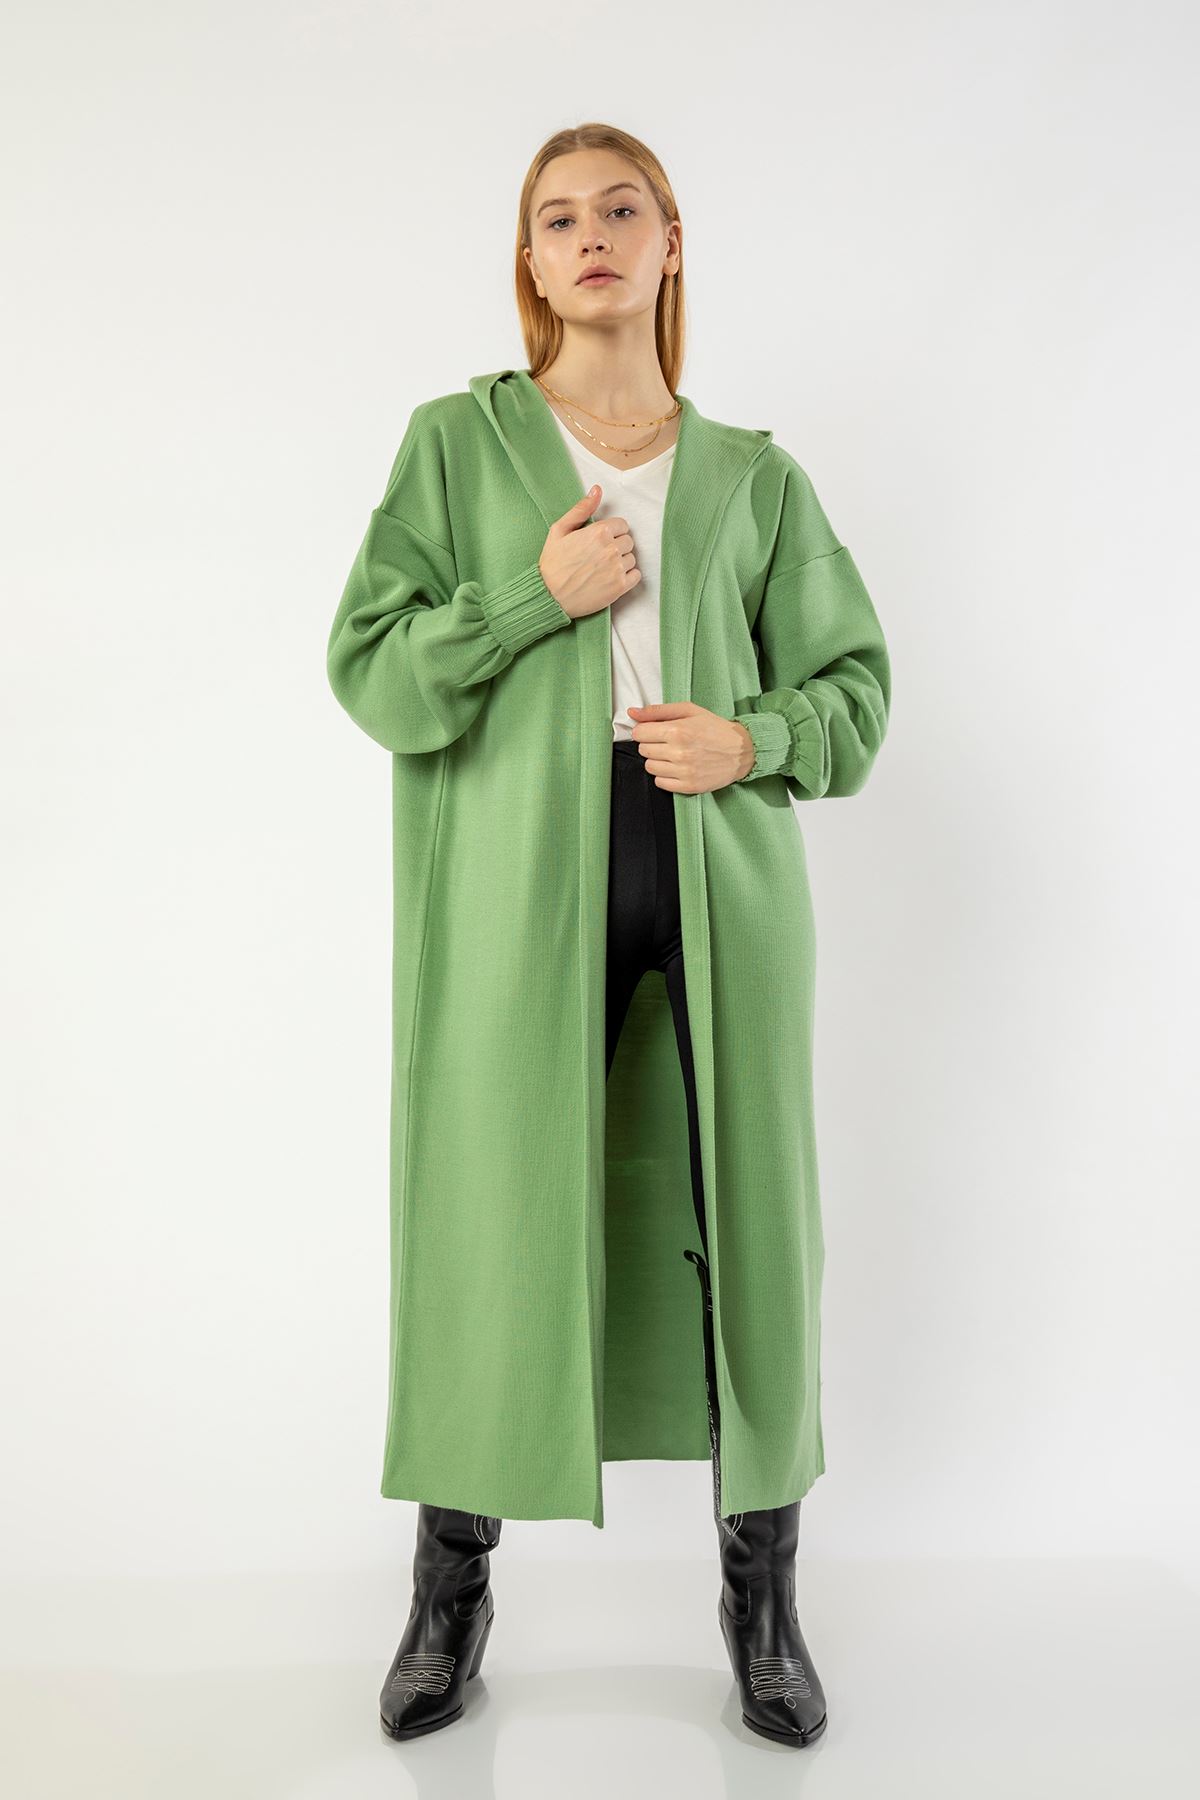 трикотаж ткань с капишоном оверсайз / женский кофта - горчикновый зеленый 